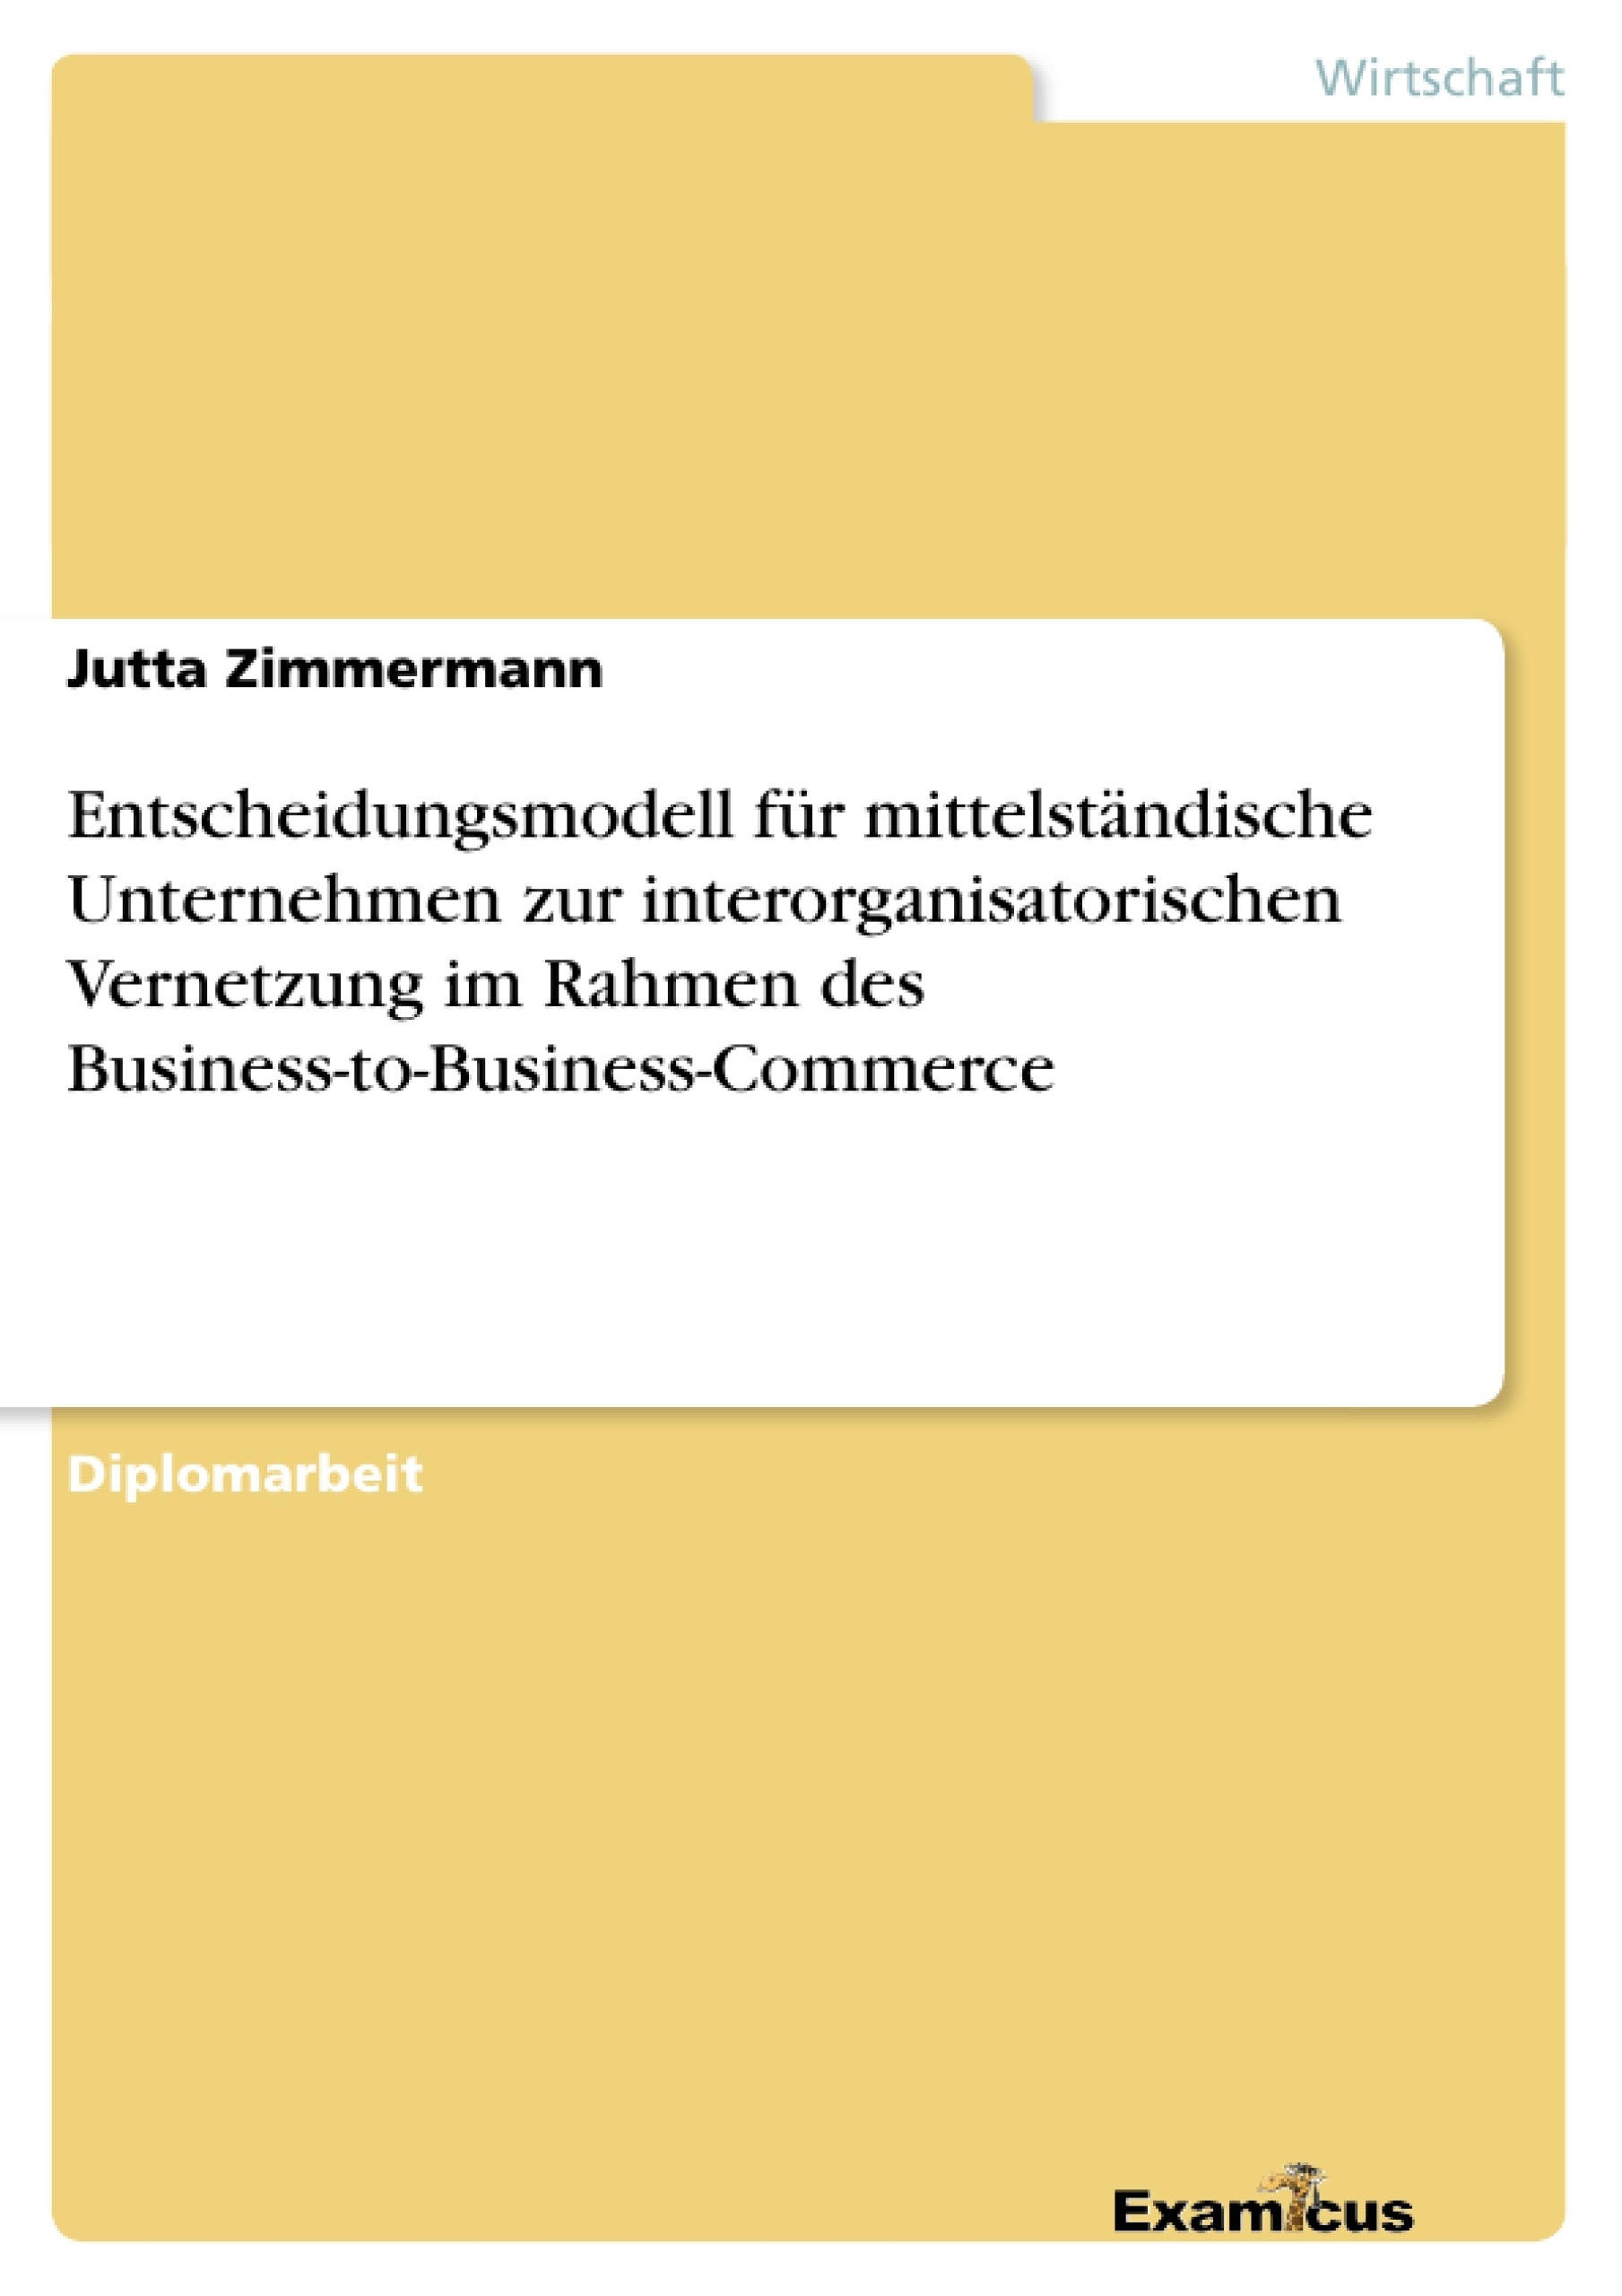 Título: Entscheidungsmodell für mittelständische Unternehmen zur interorganisatorischen Vernetzung im Rahmen des Business-to-Business-Commerce